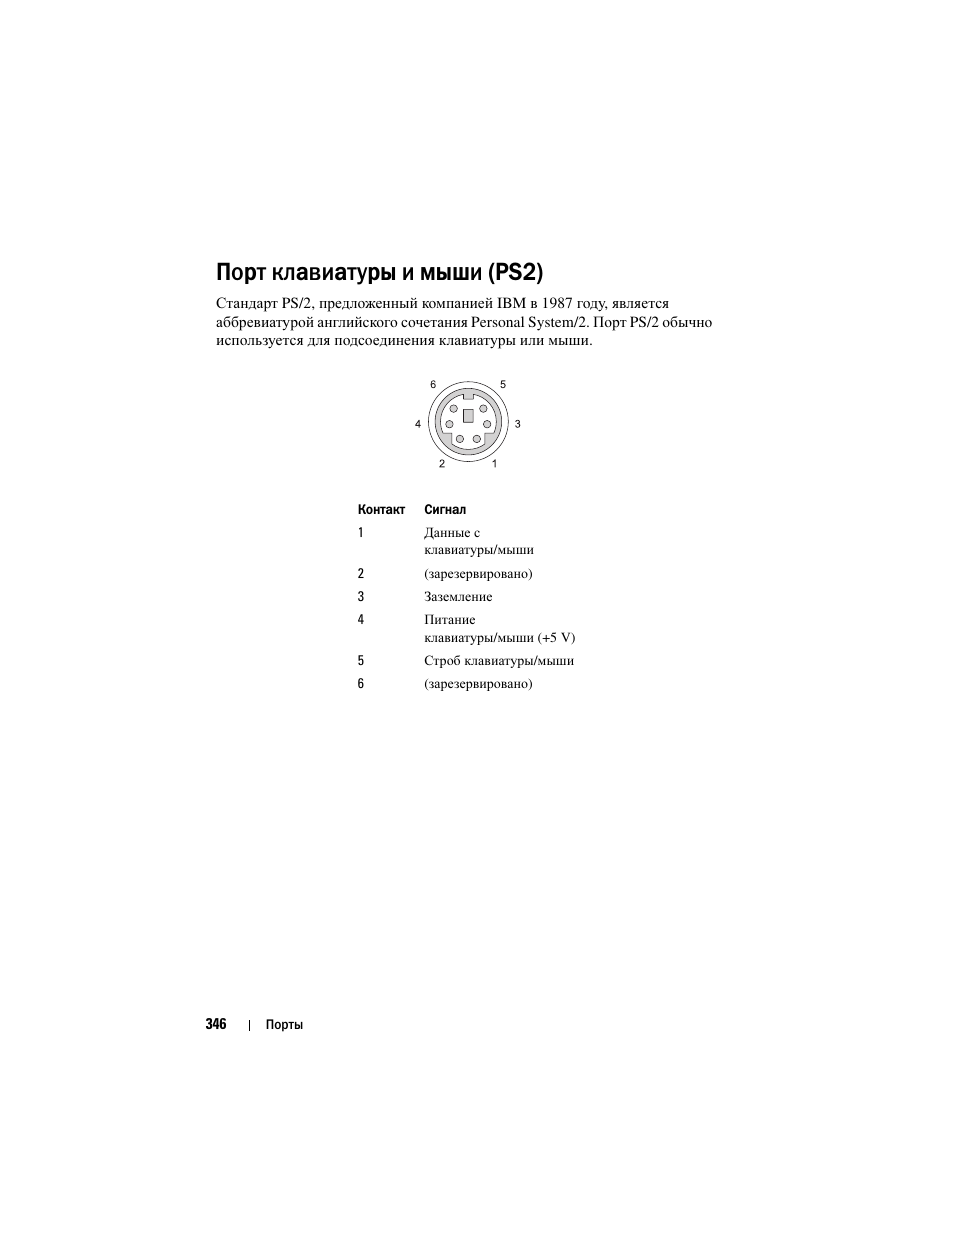 Порт клавиатуры и мыши (ps2) | Инструкция по эксплуатации Dell Inspiron 560 | Страница 346 / 384